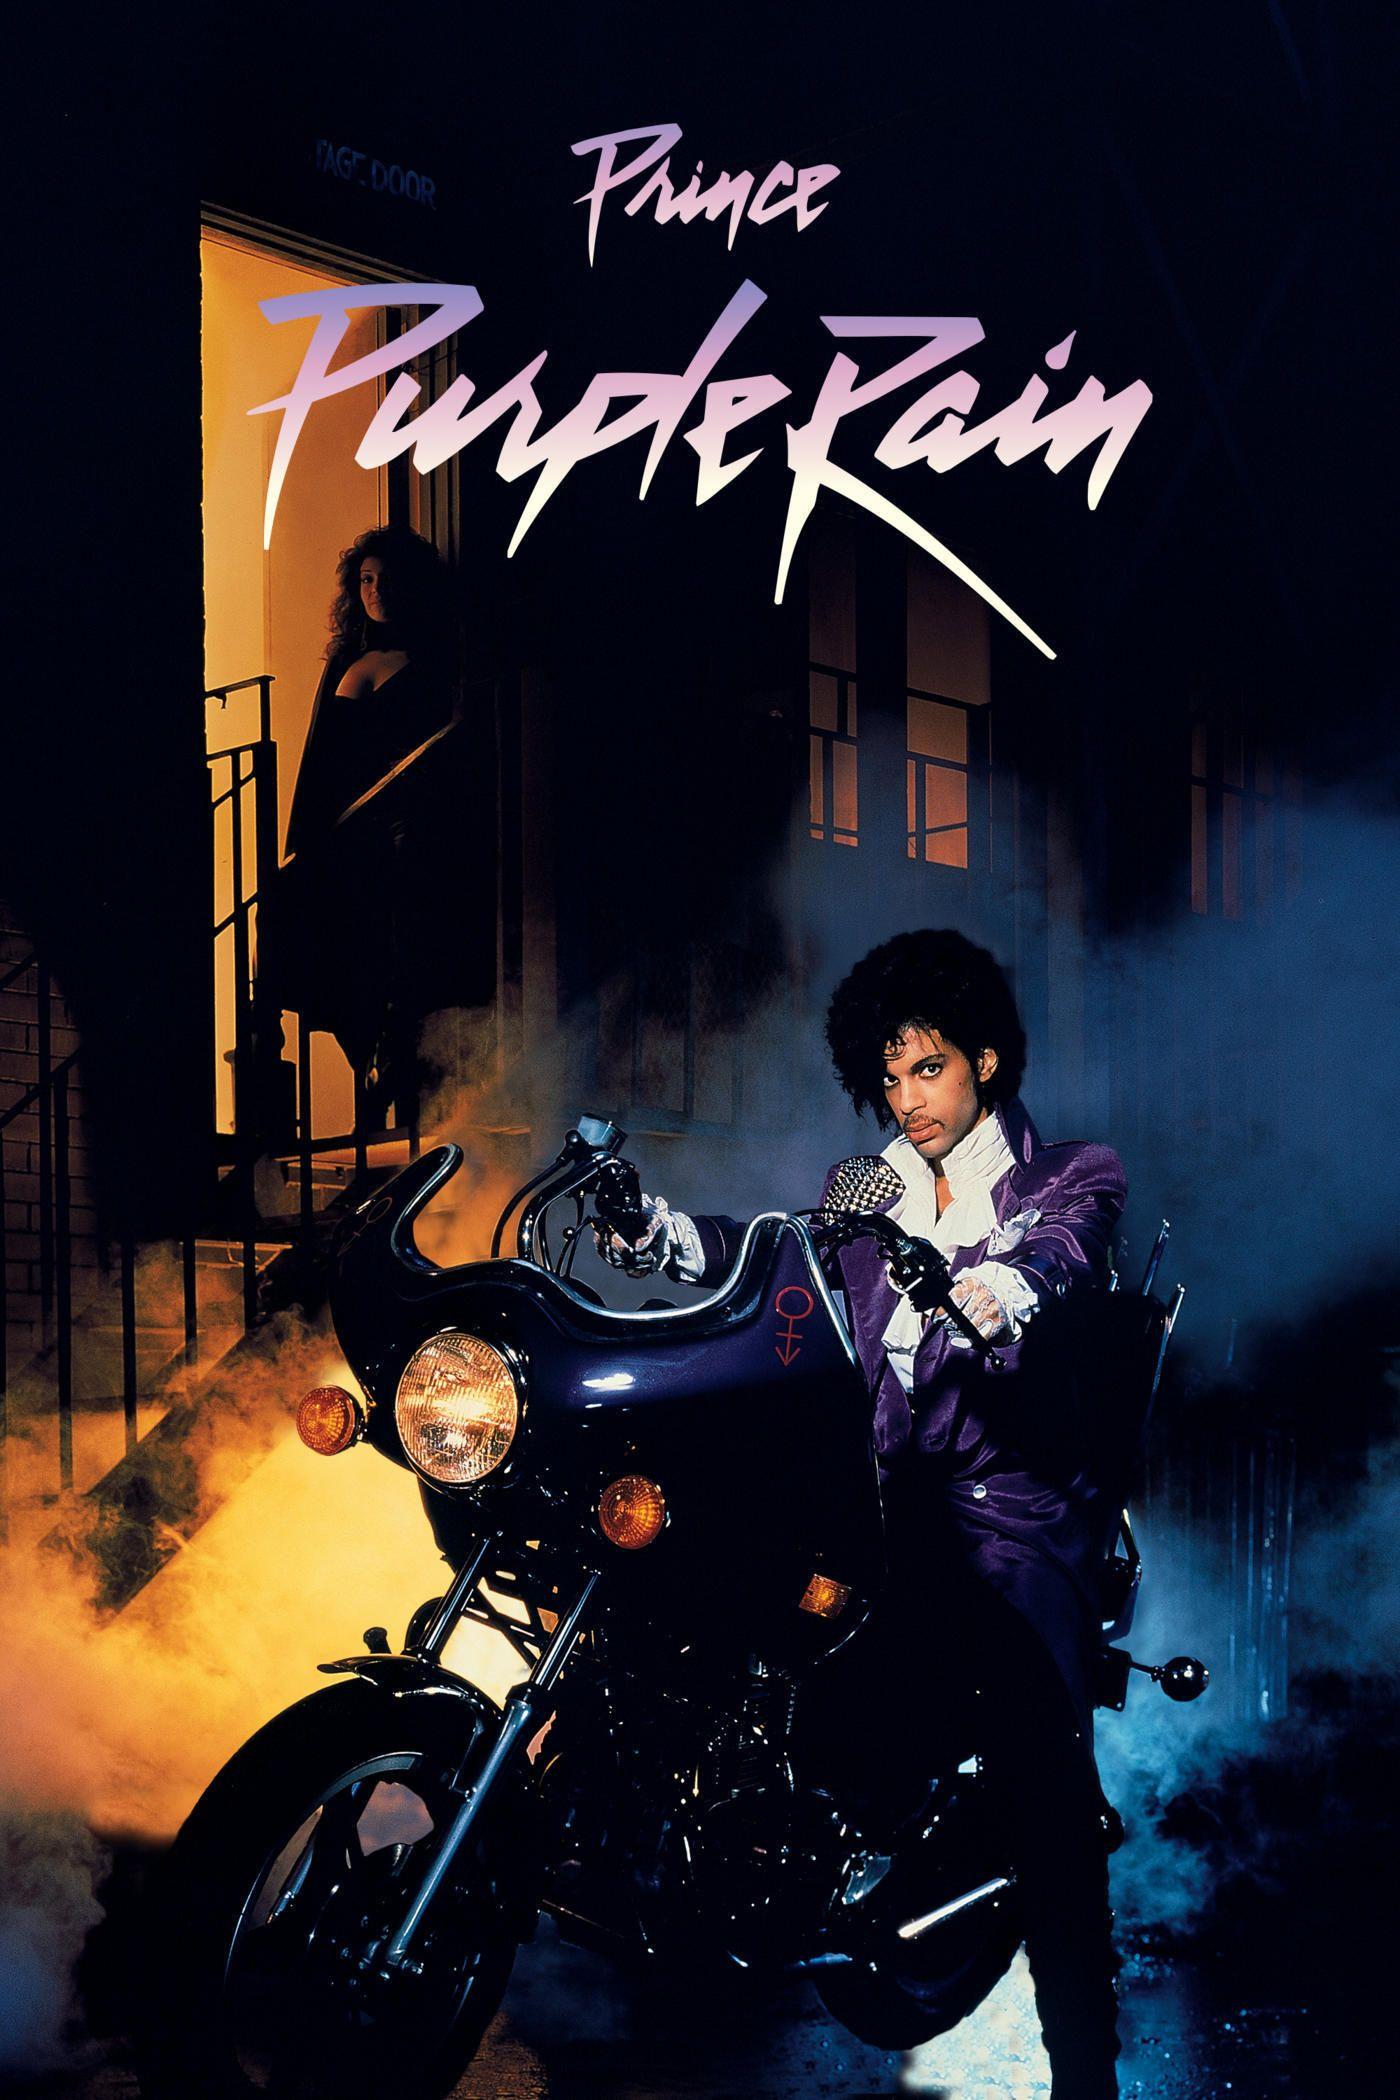 purple rain lyrics prince